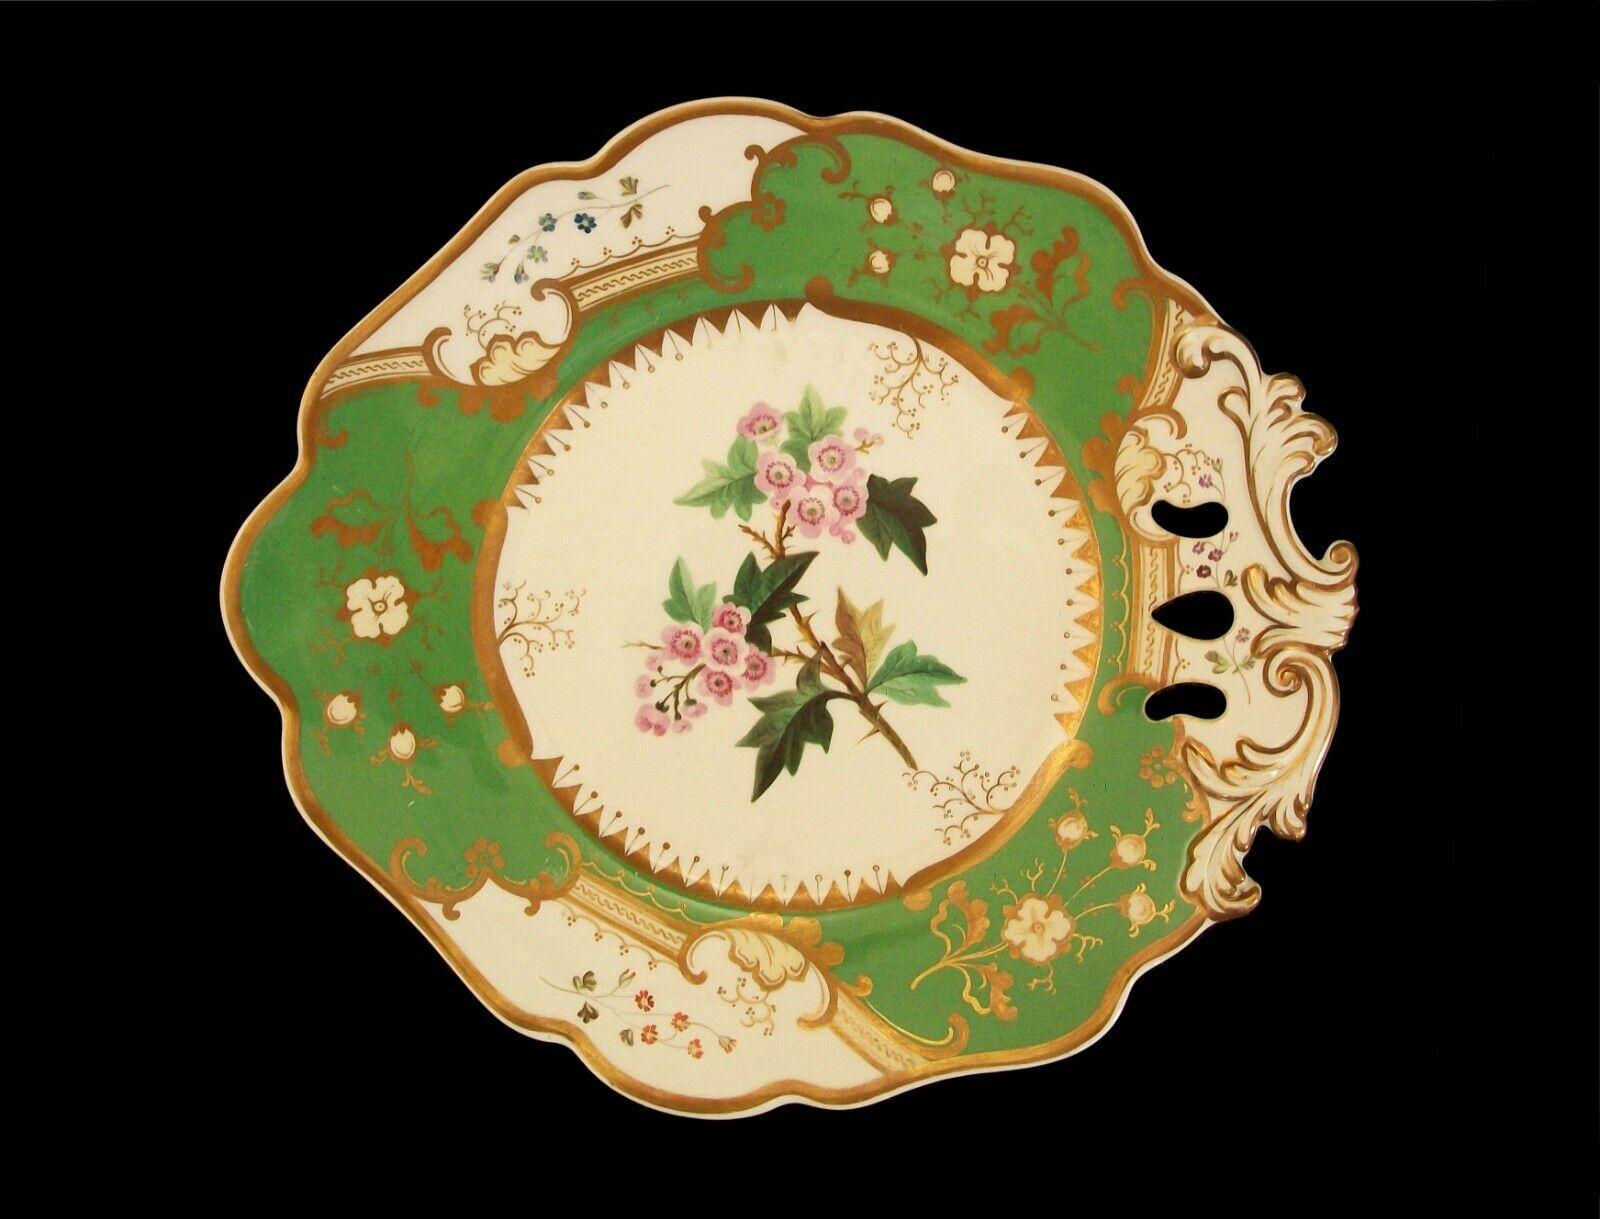 Coalport (zugeschrieben) - 'English Hawthorn' - Antike botanische Servierplatte aus Keramik mit einem Griff, apfelgrünem Rand und vergoldetem Dekor - mit einem handgemalten Blumenmuster in der Mitte - Musternummer auf der Rückseite - unsigniert -